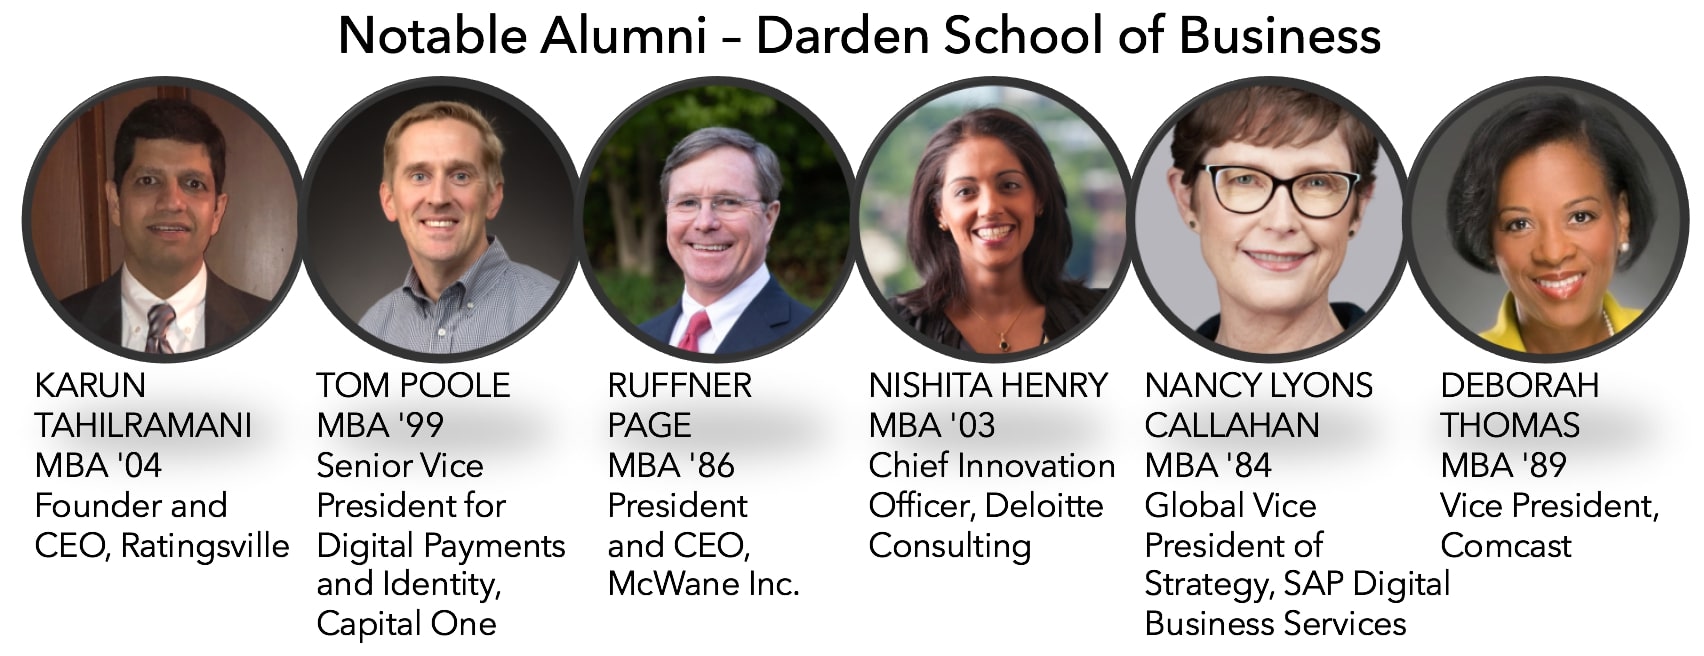 Darden School of business notable alumni